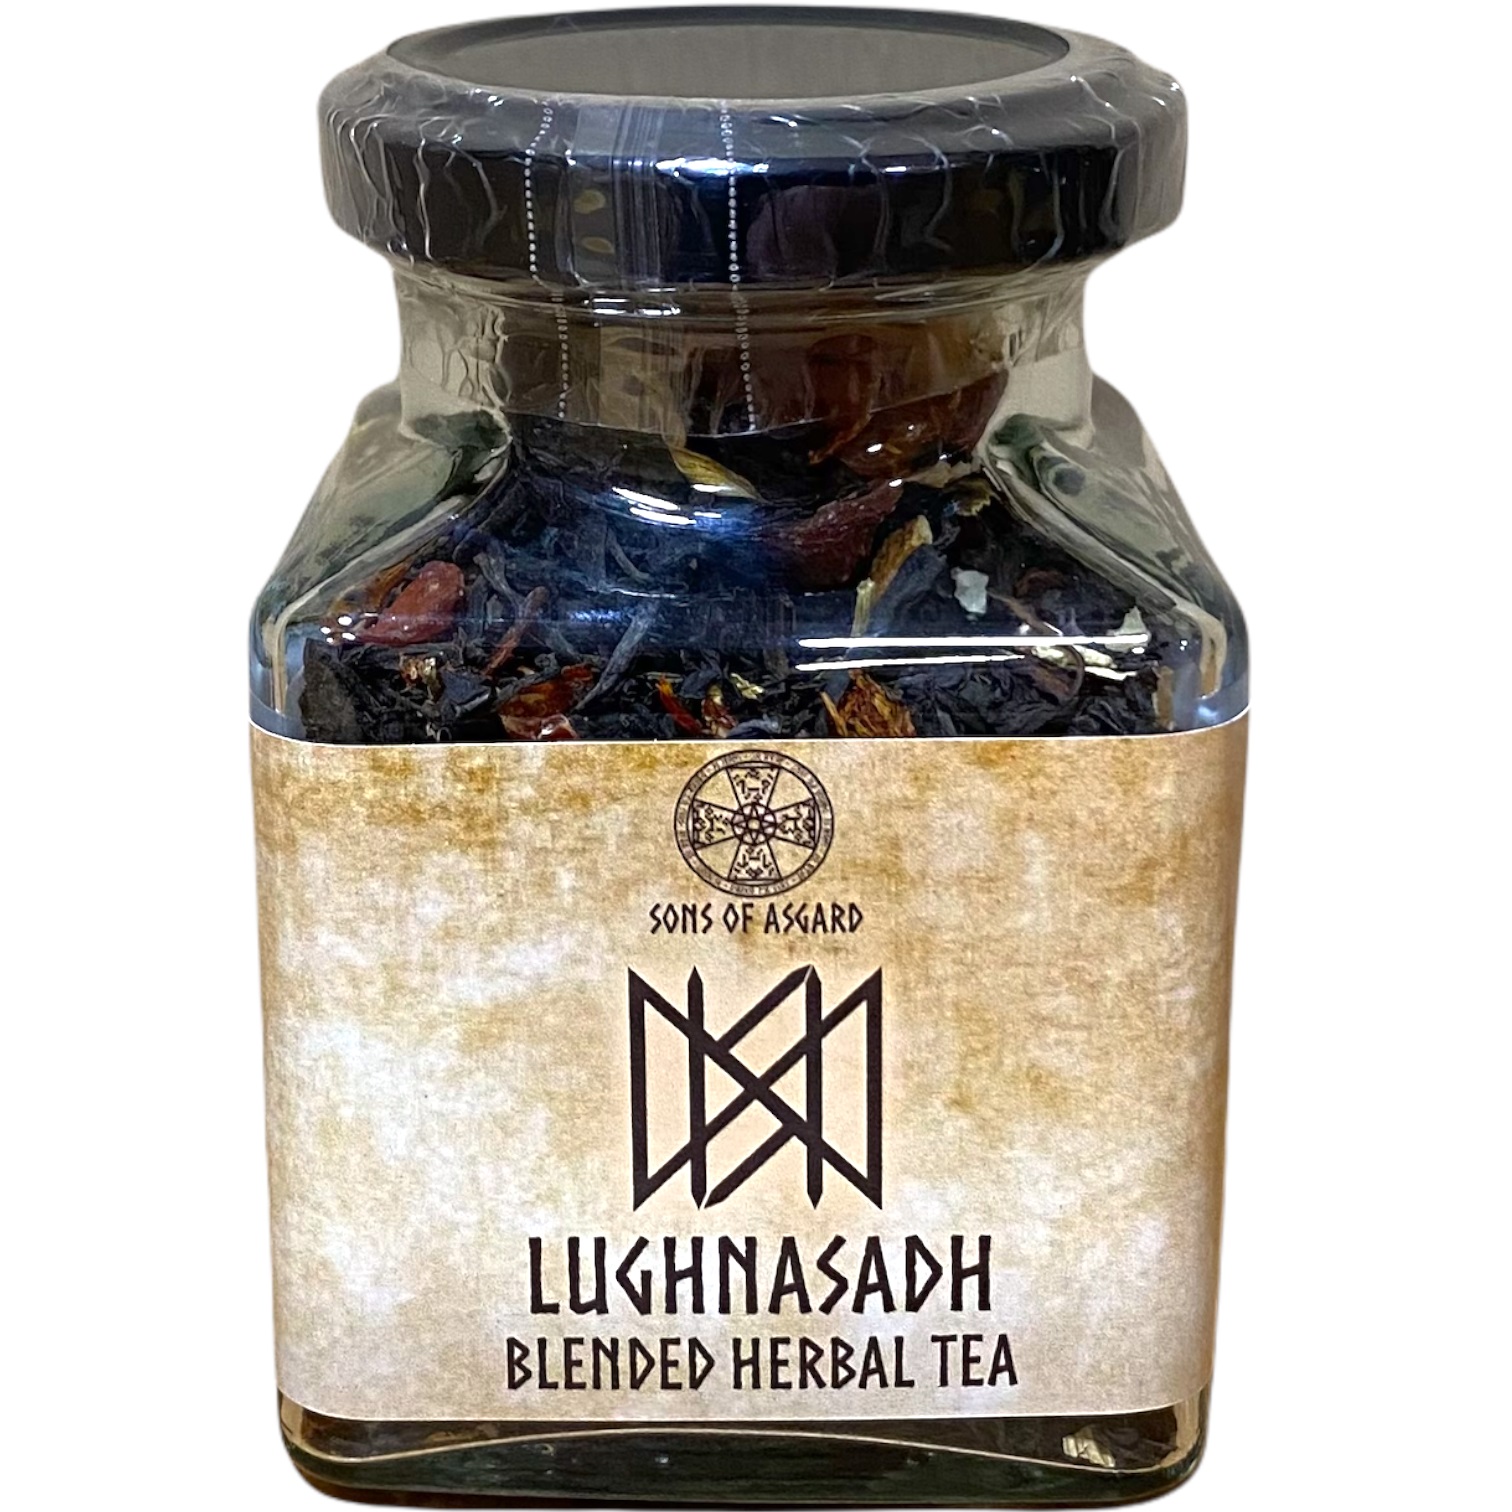 Lughnasadh - Blended Herbal Tea